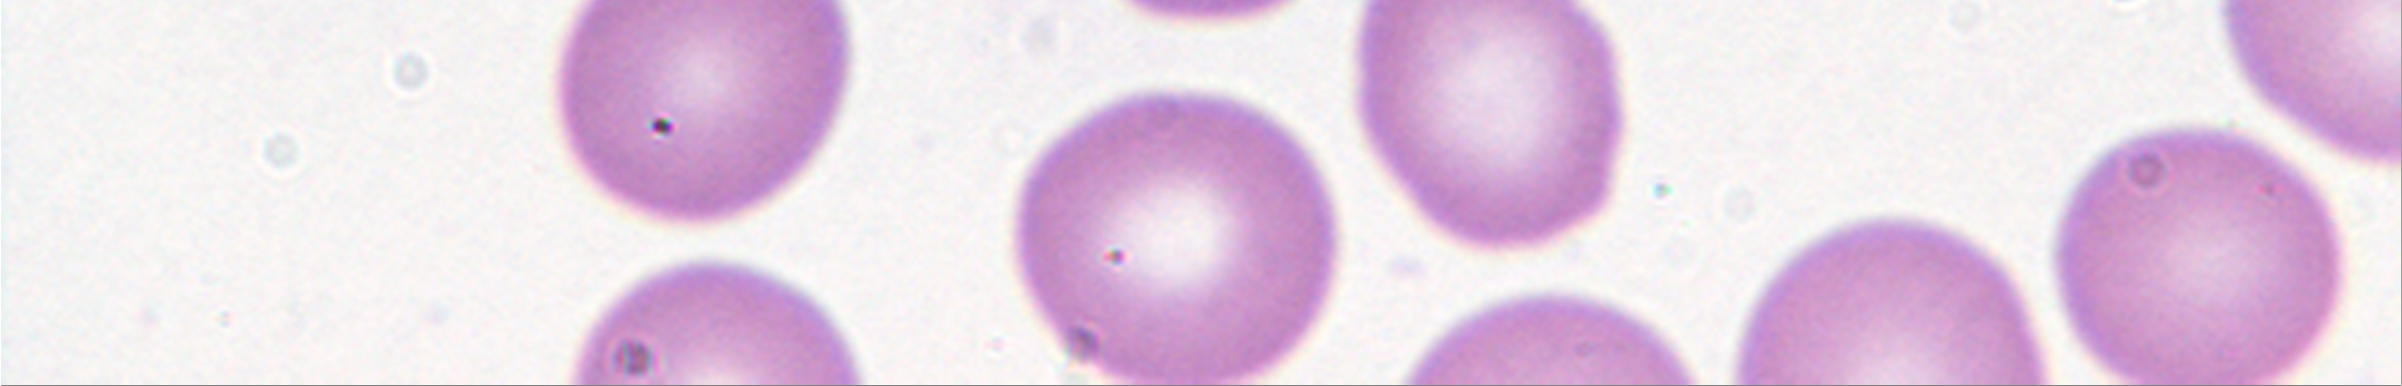 Obr. 1 Krevní nátěr - Krevní monocyt (Mo). Panoptické barvení, zvětšení 1000x.